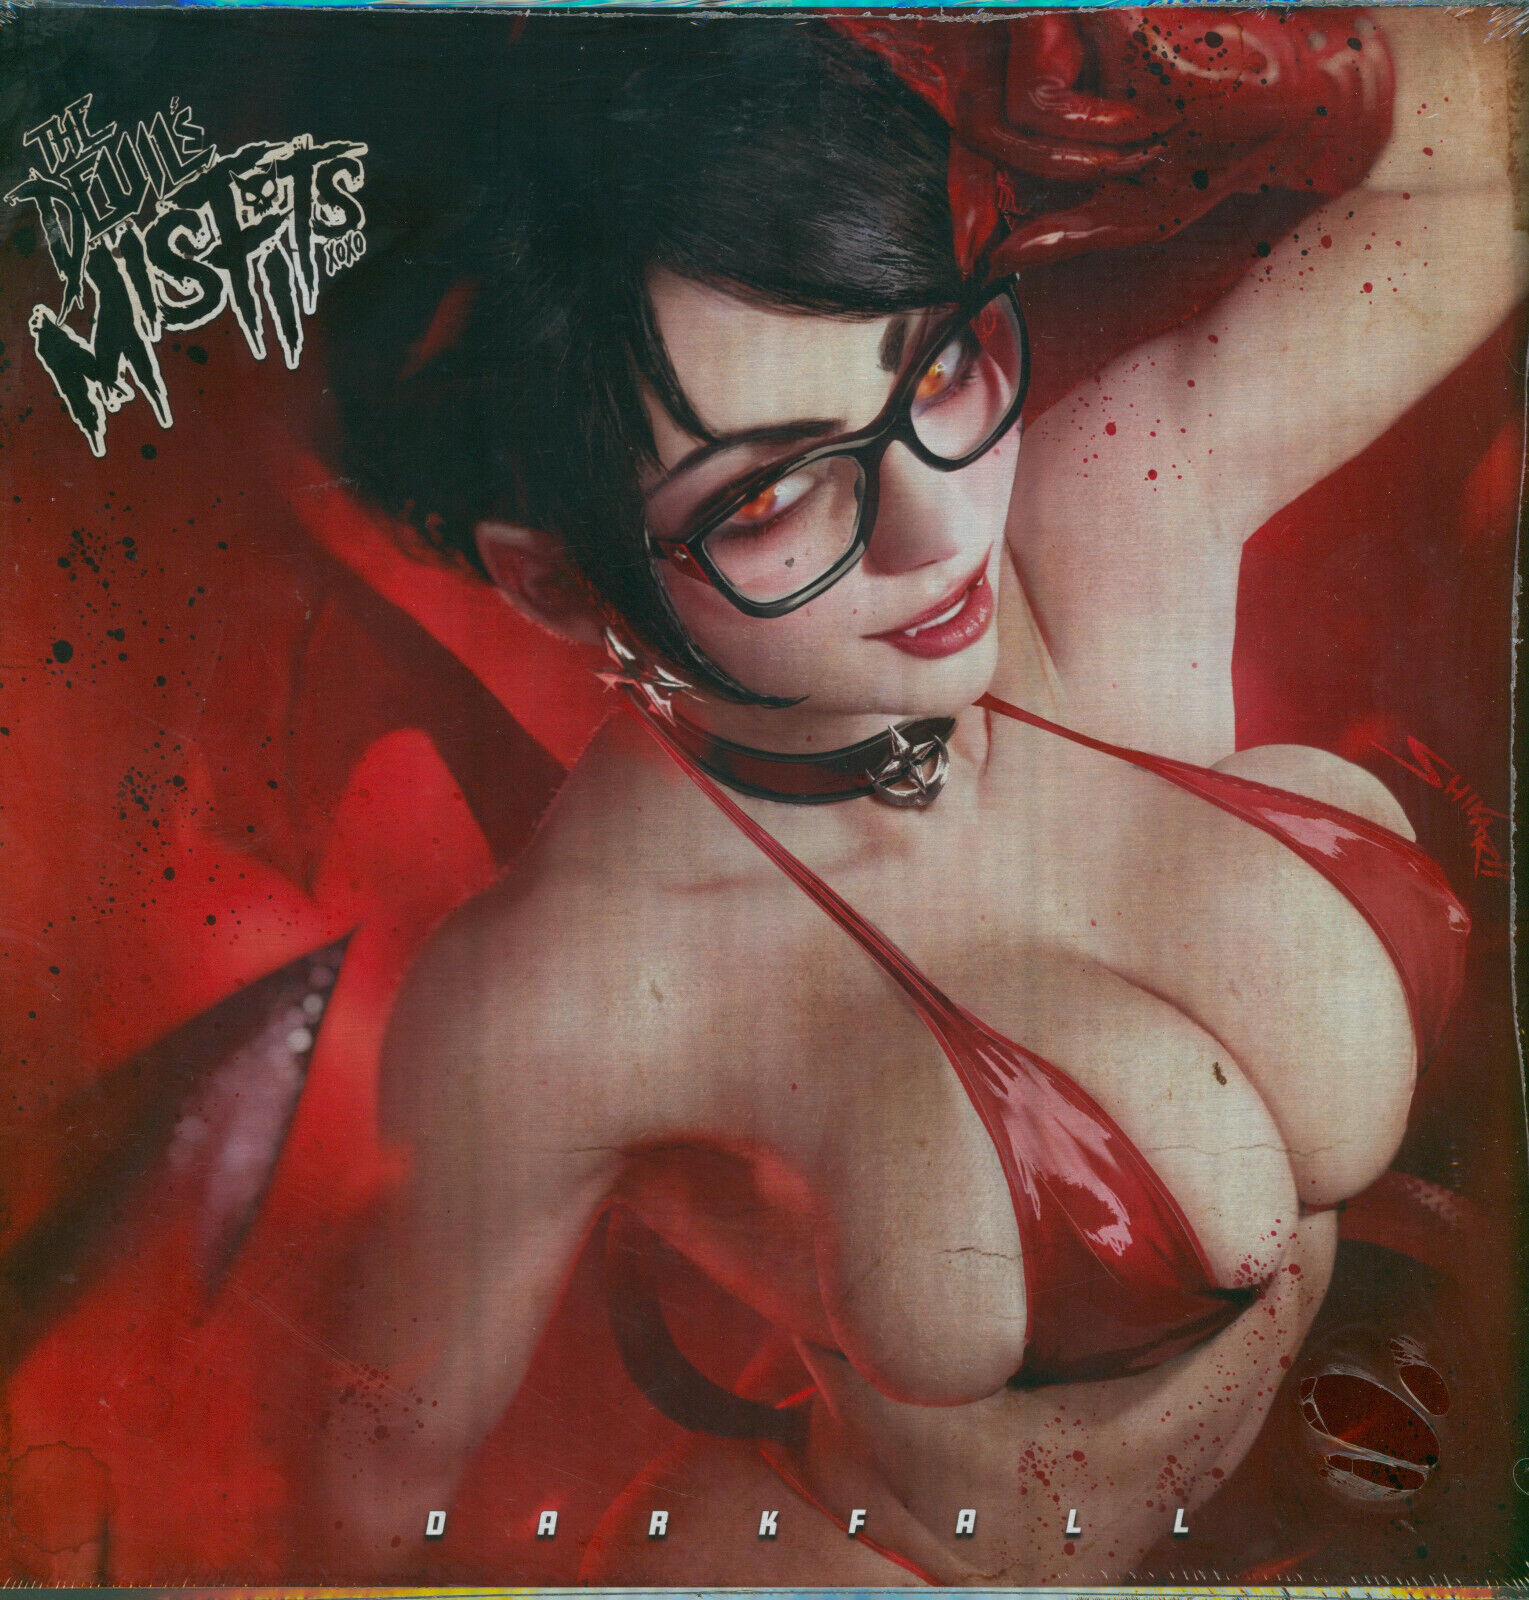 The Devil’s Misfit's Shikarii Darkfall Metal Album Cover Sealed Kickstarter